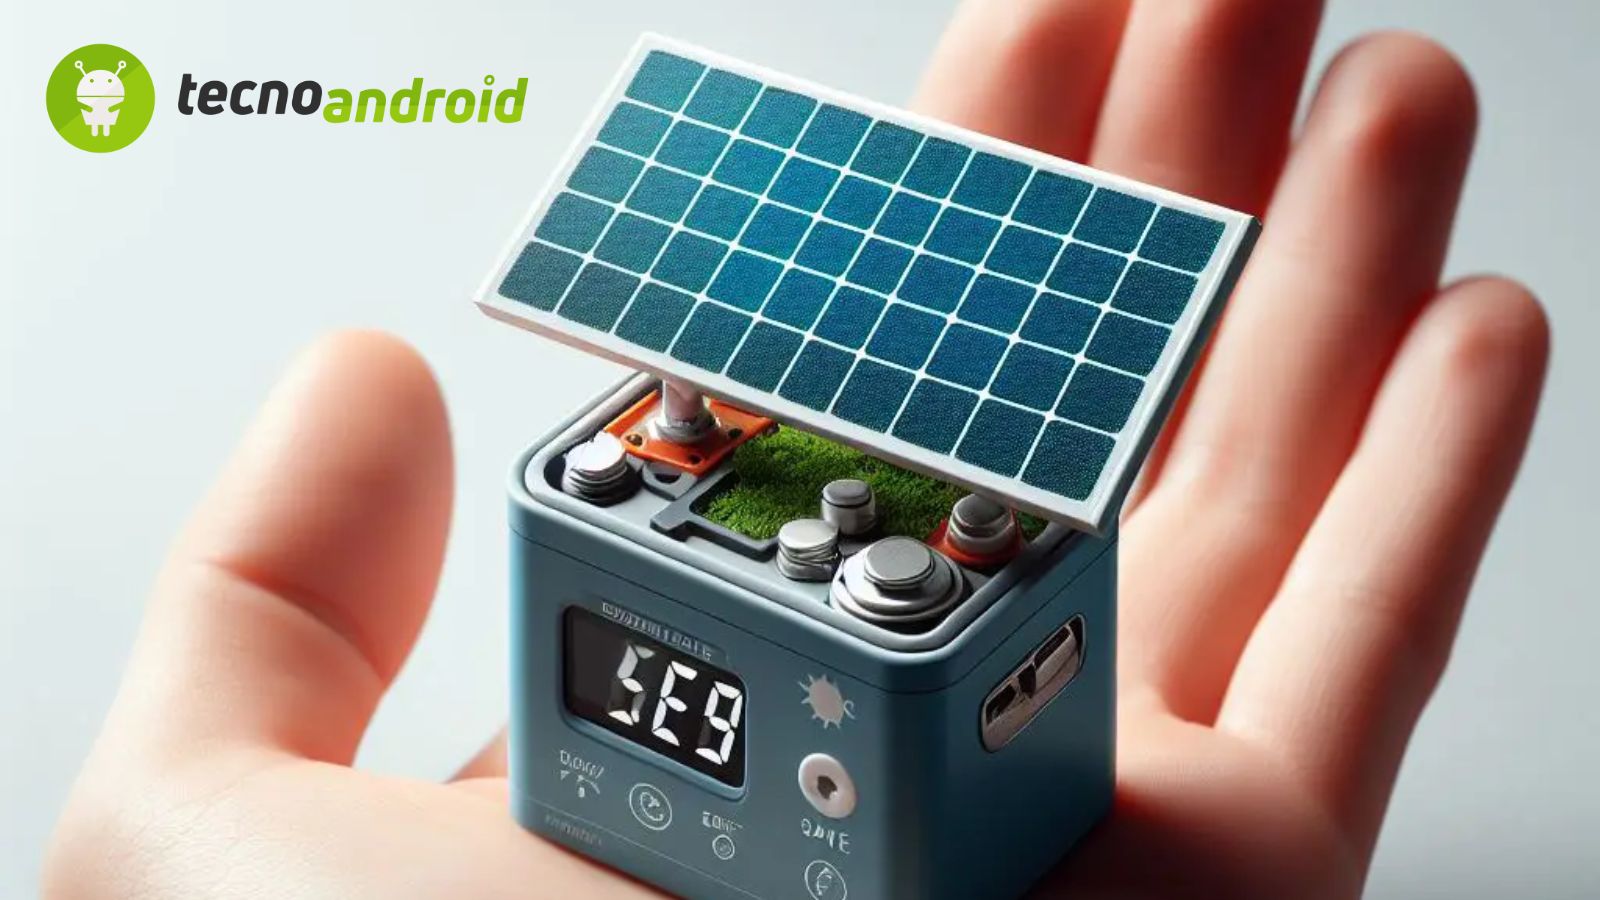 In arrivo una mini-batteria fotovoltaica ad energia solare 